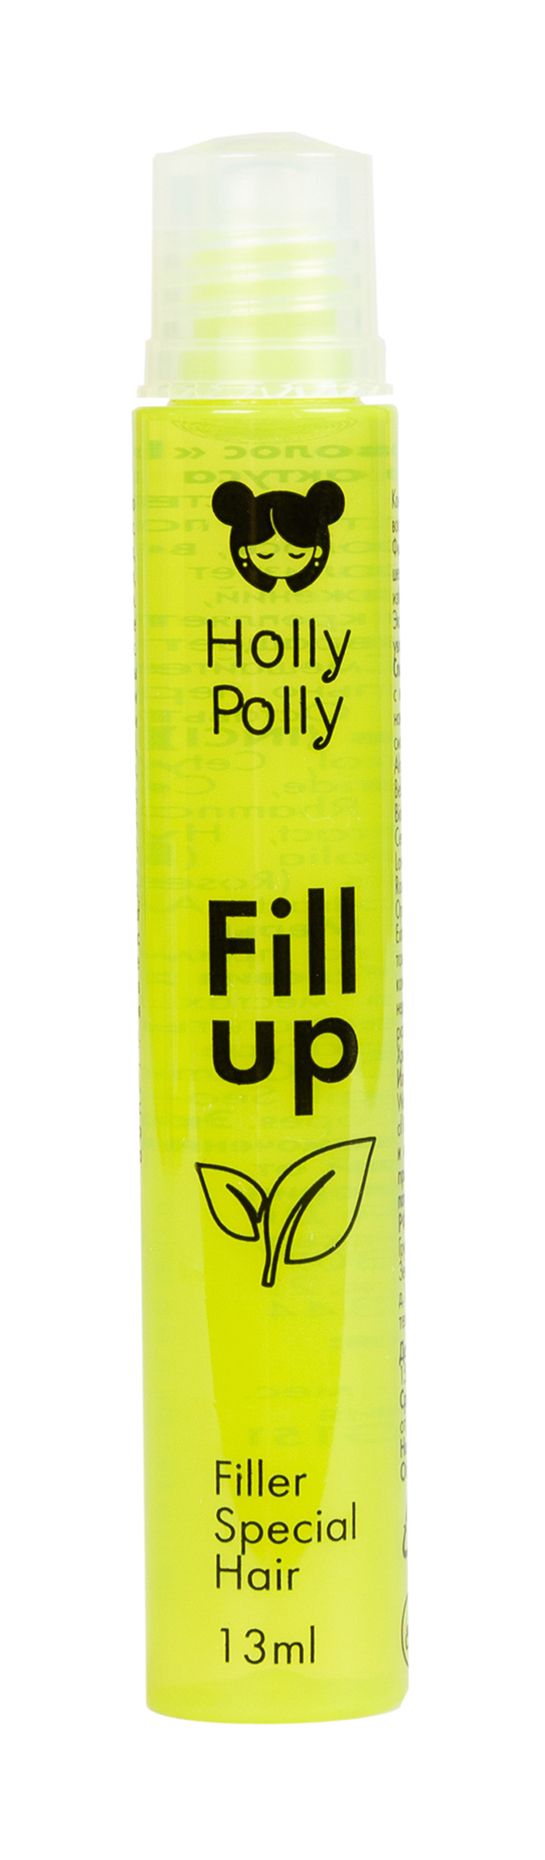 Филлер для восстановления волос с экстрактом кактуса и алое Holly Polly Fill  up Filler Special Hair - купить с доставкой по выгодны